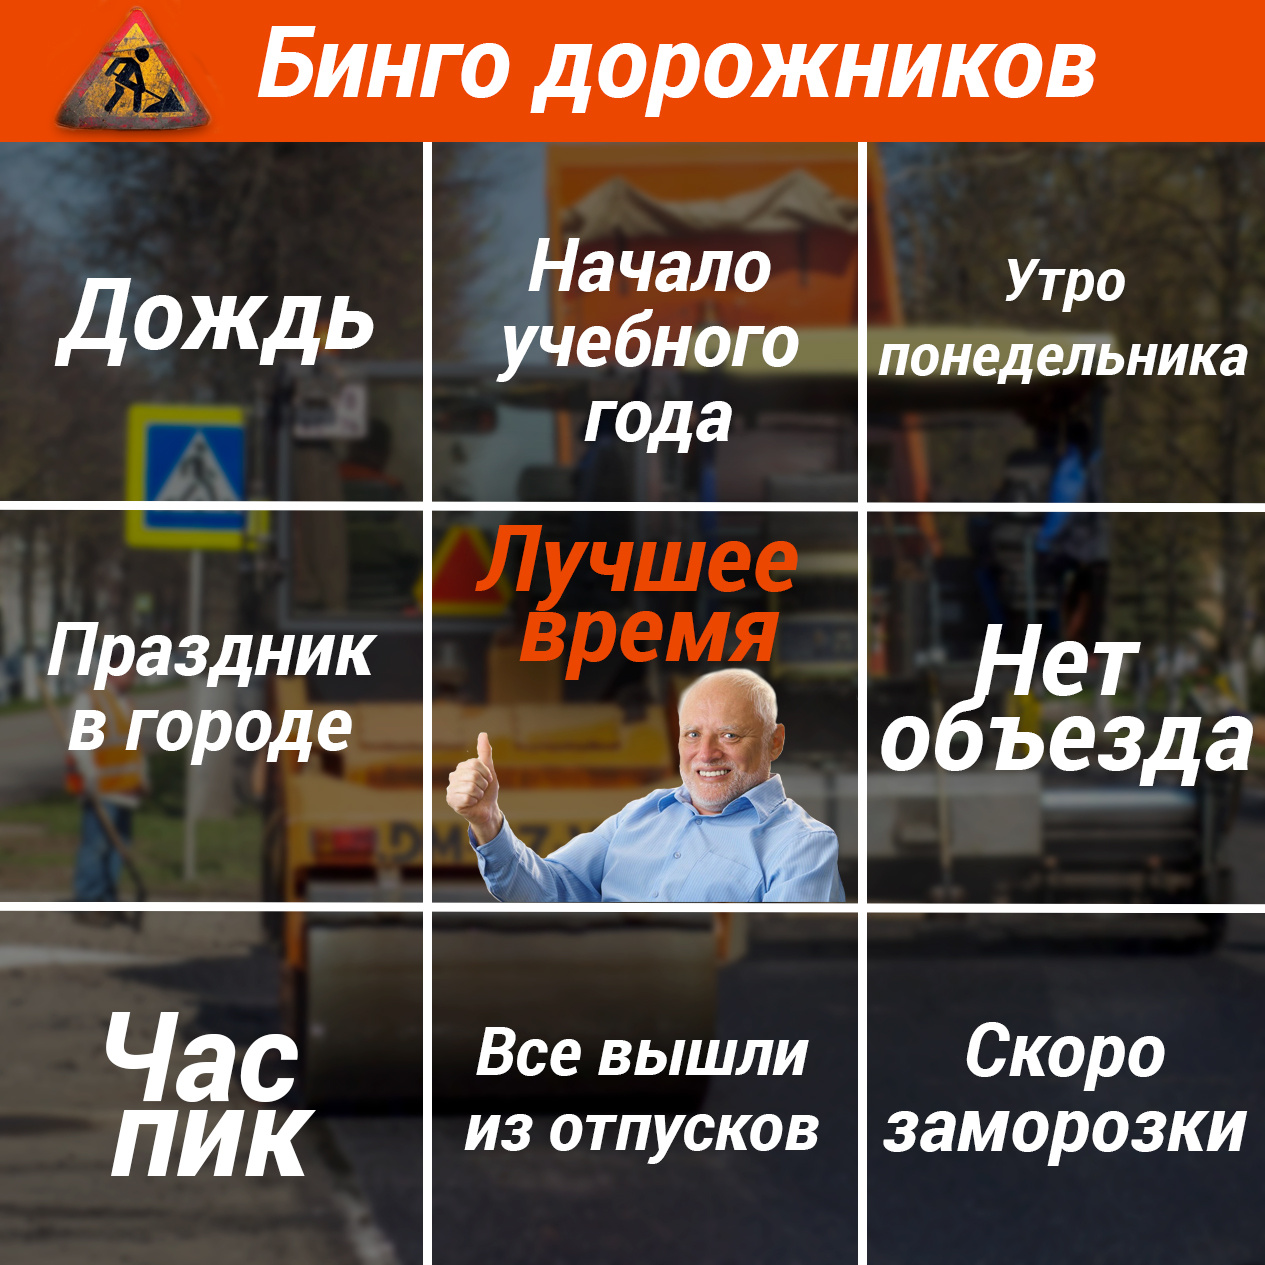 Как ярославские дорожники делают ремонт